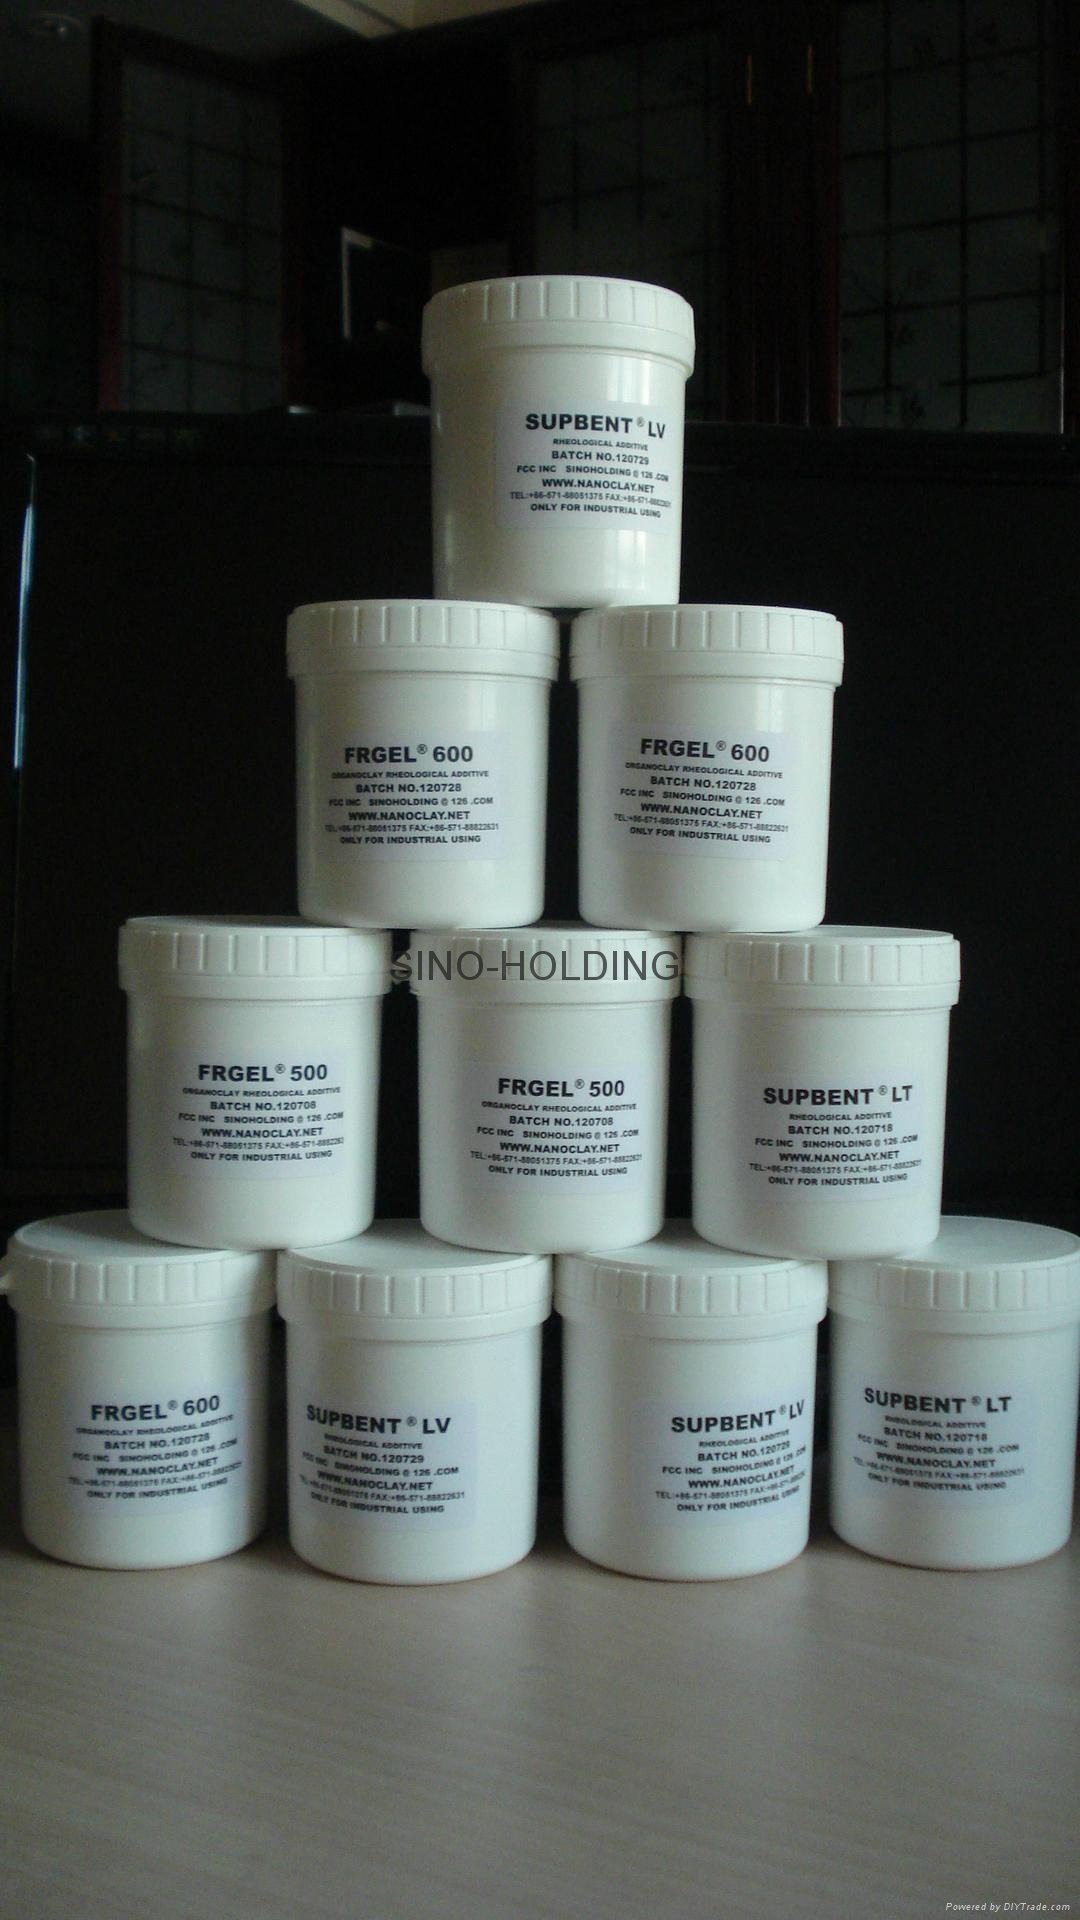 納米蒙脫土-NANOLIN DK ® 工程塑料用改性功能助劑 2